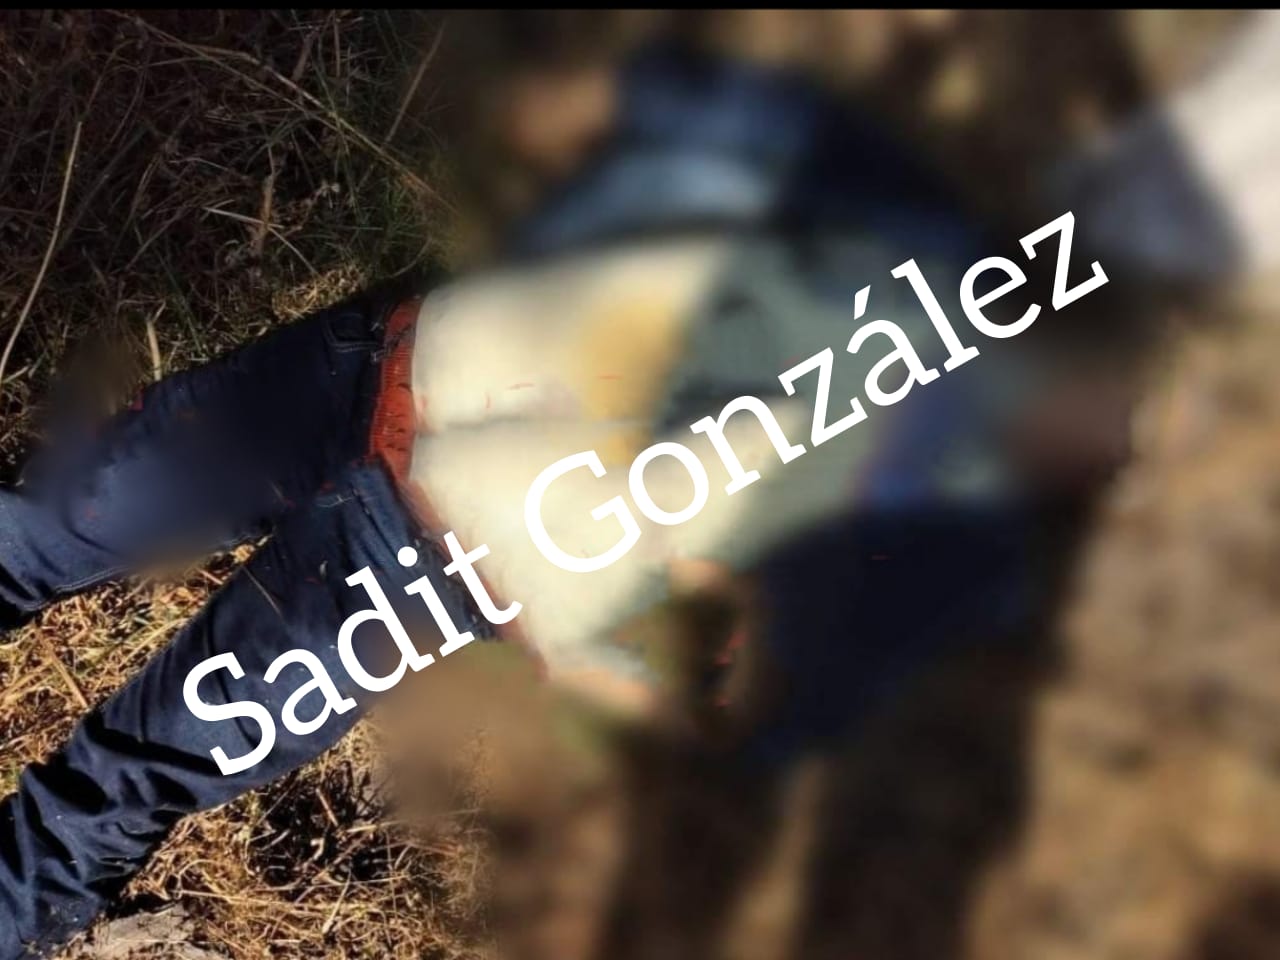 Asesinado a balazos en Tlacotepec de Juárez